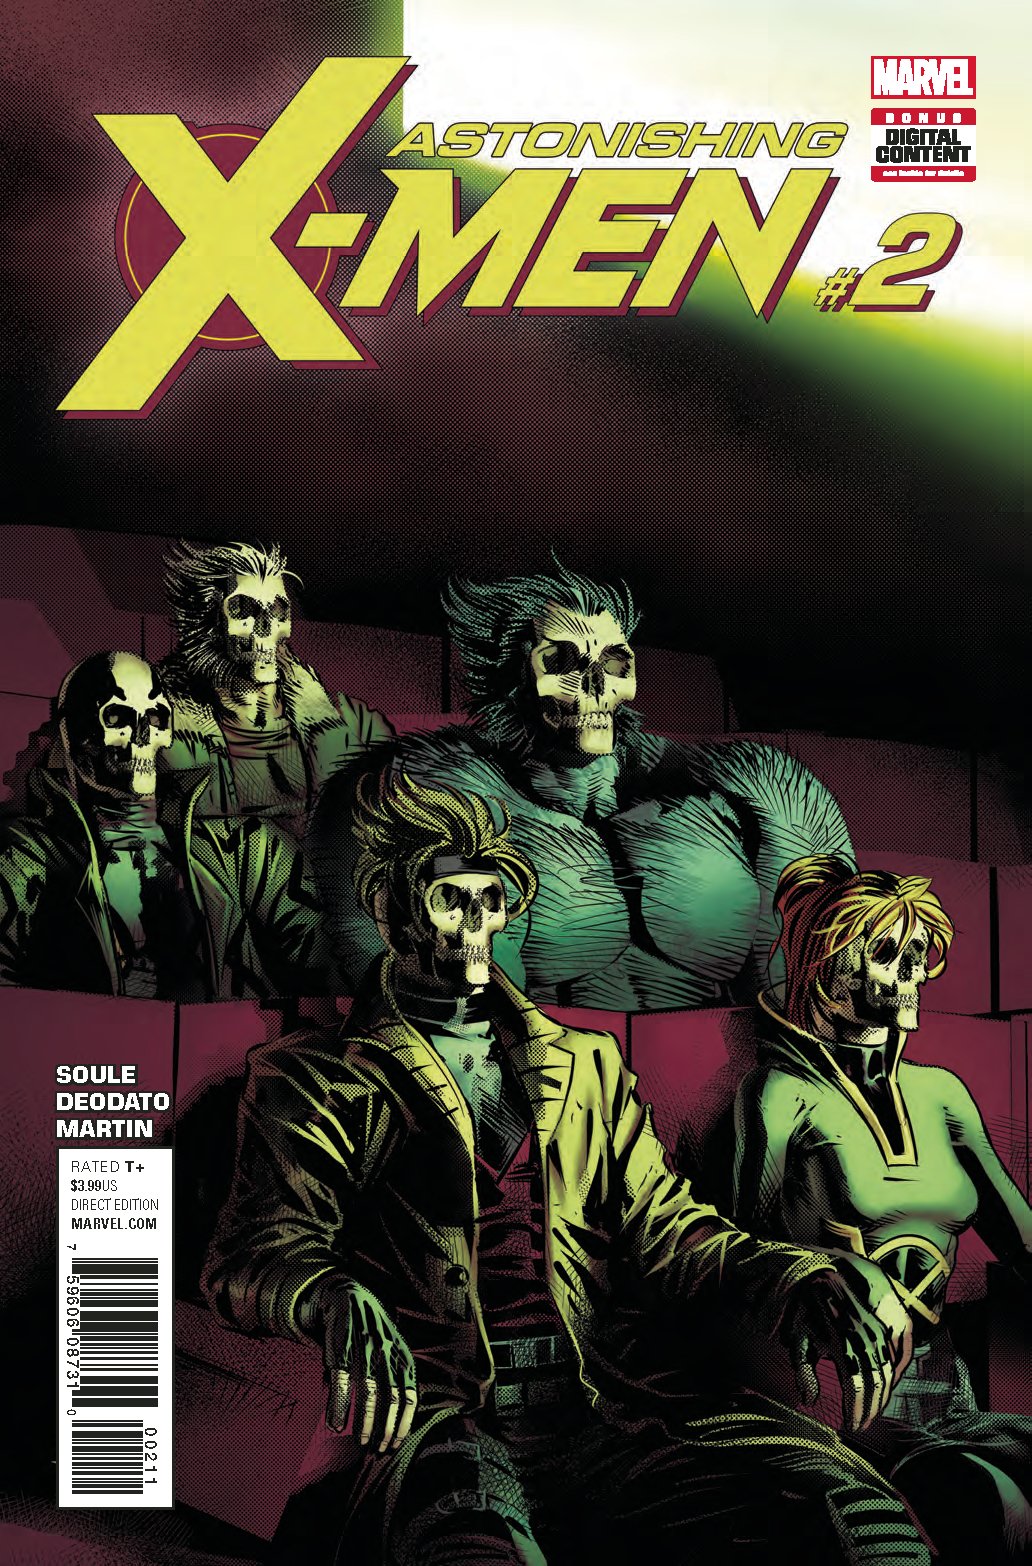 ASTONISHING X-MEN #2 COVER